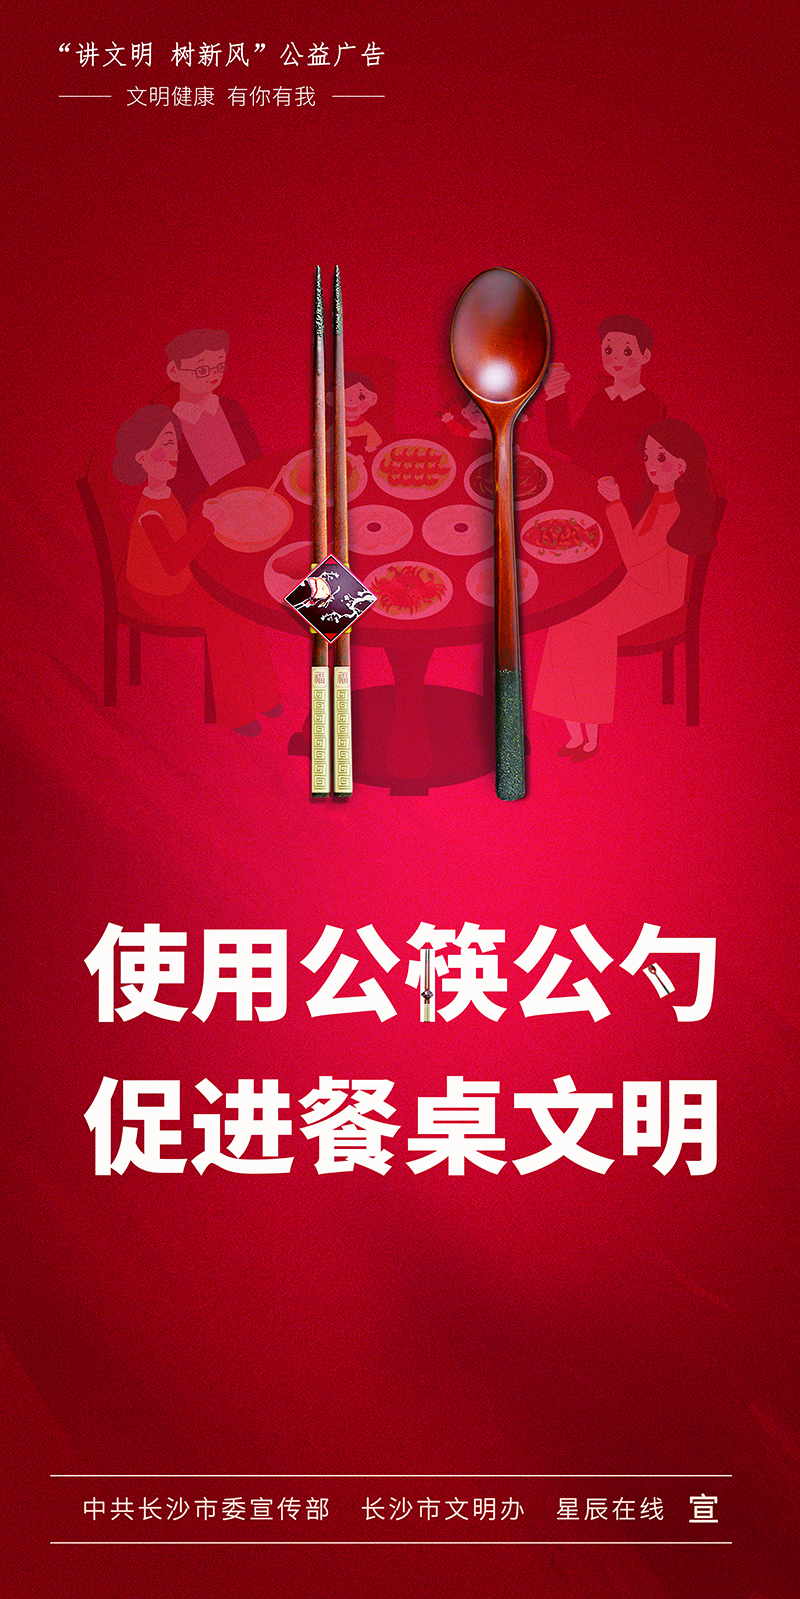 使用公筷公勺 共建文明餐桌（竖）